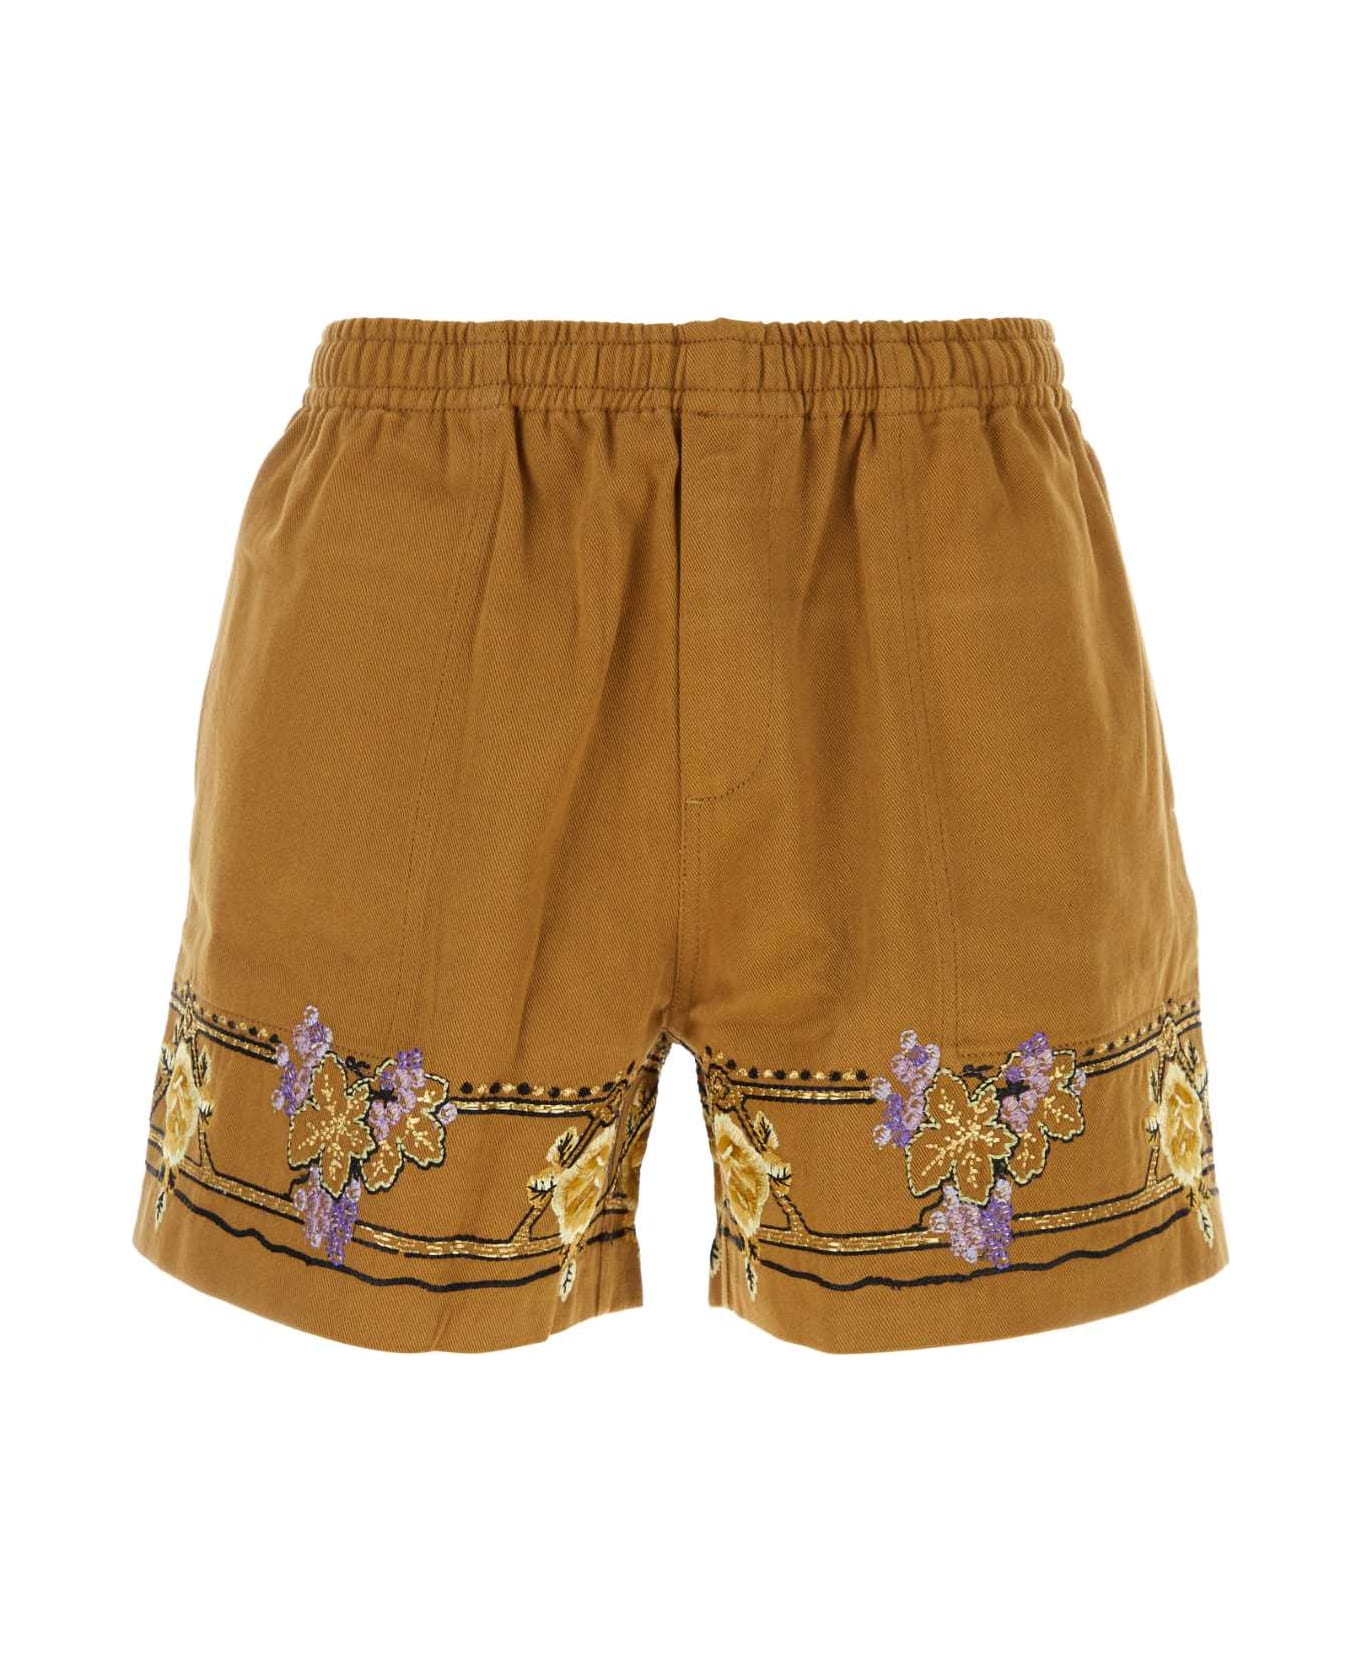 Bode Caramel Cotton Bermuda Shorts - BROWNMULTI